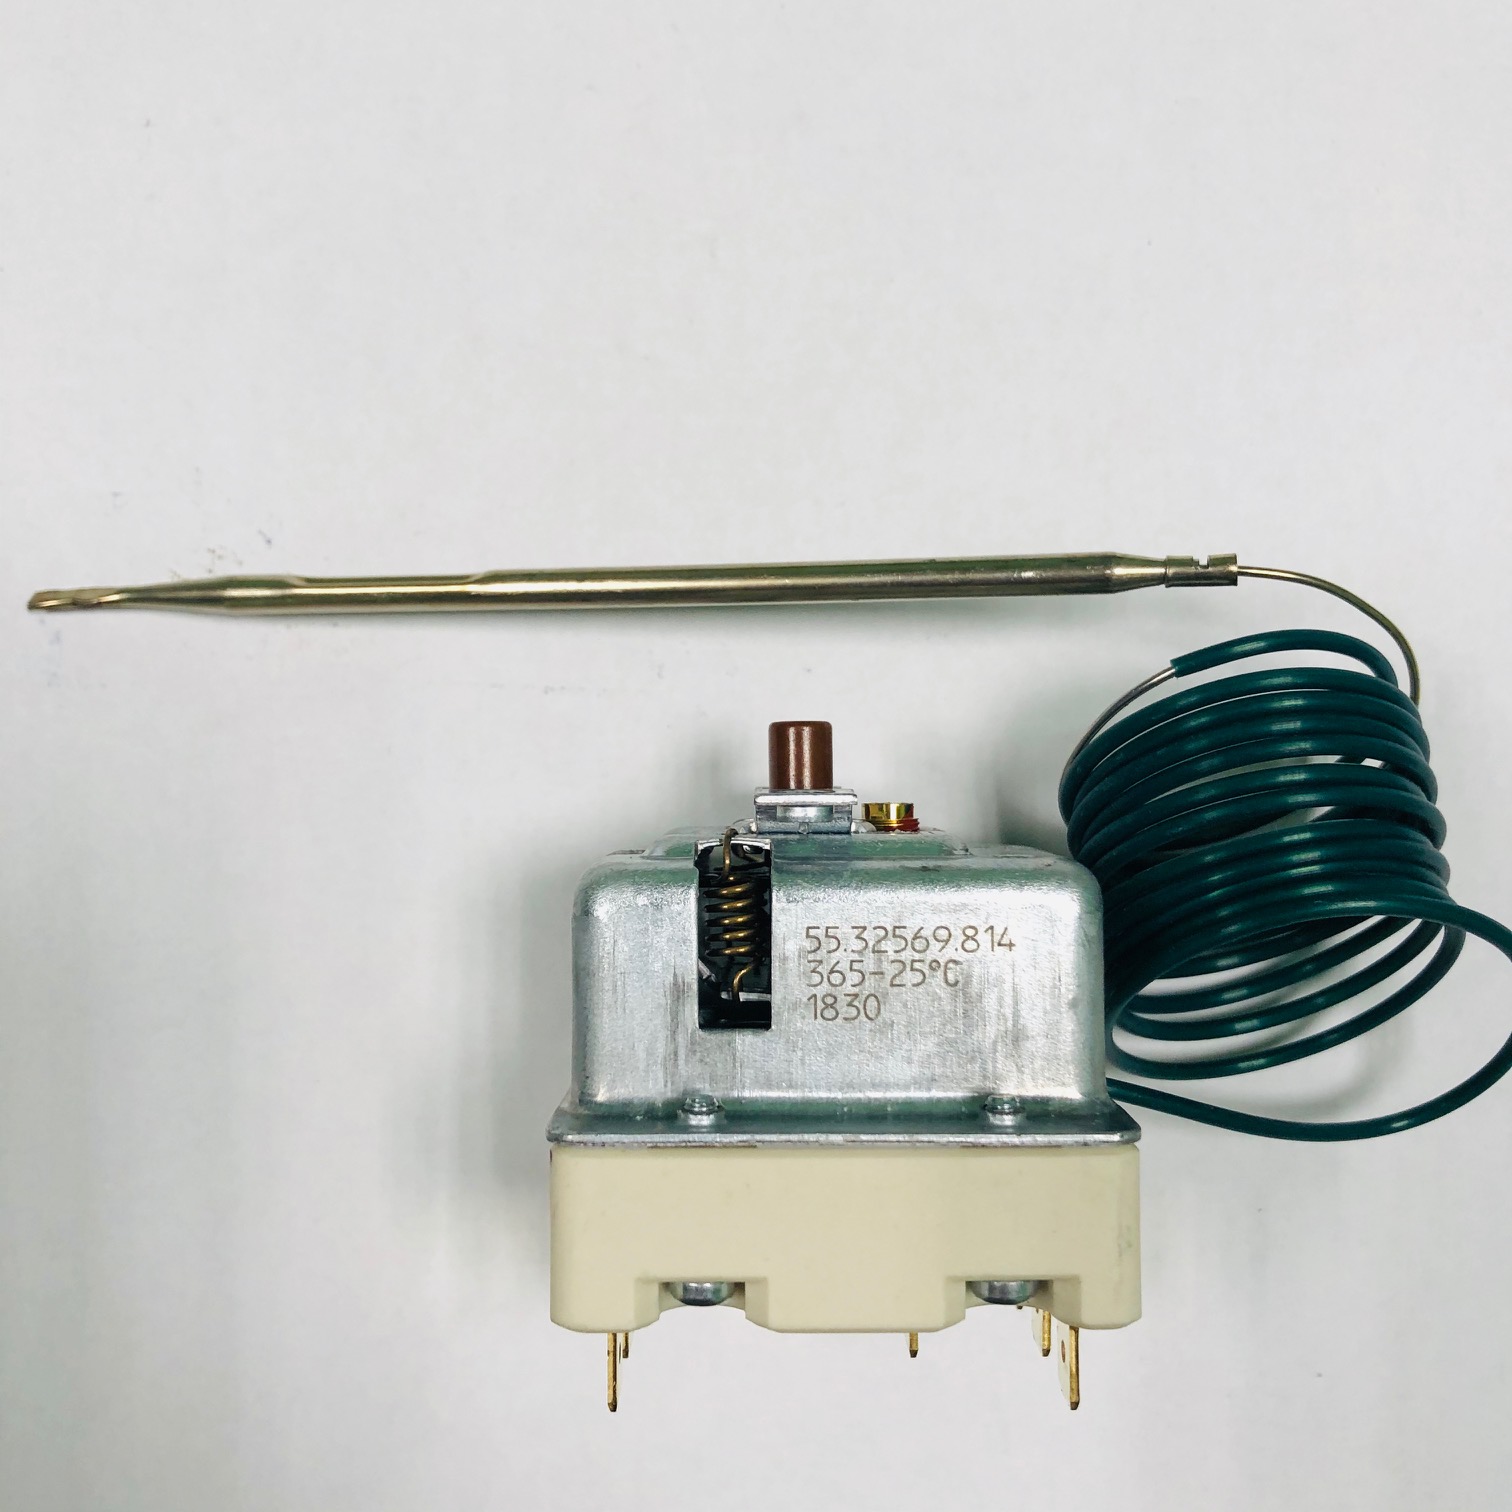 терморегулятор-отсекатель капиллярный для духовки 365С, 3Р 55.32569.814